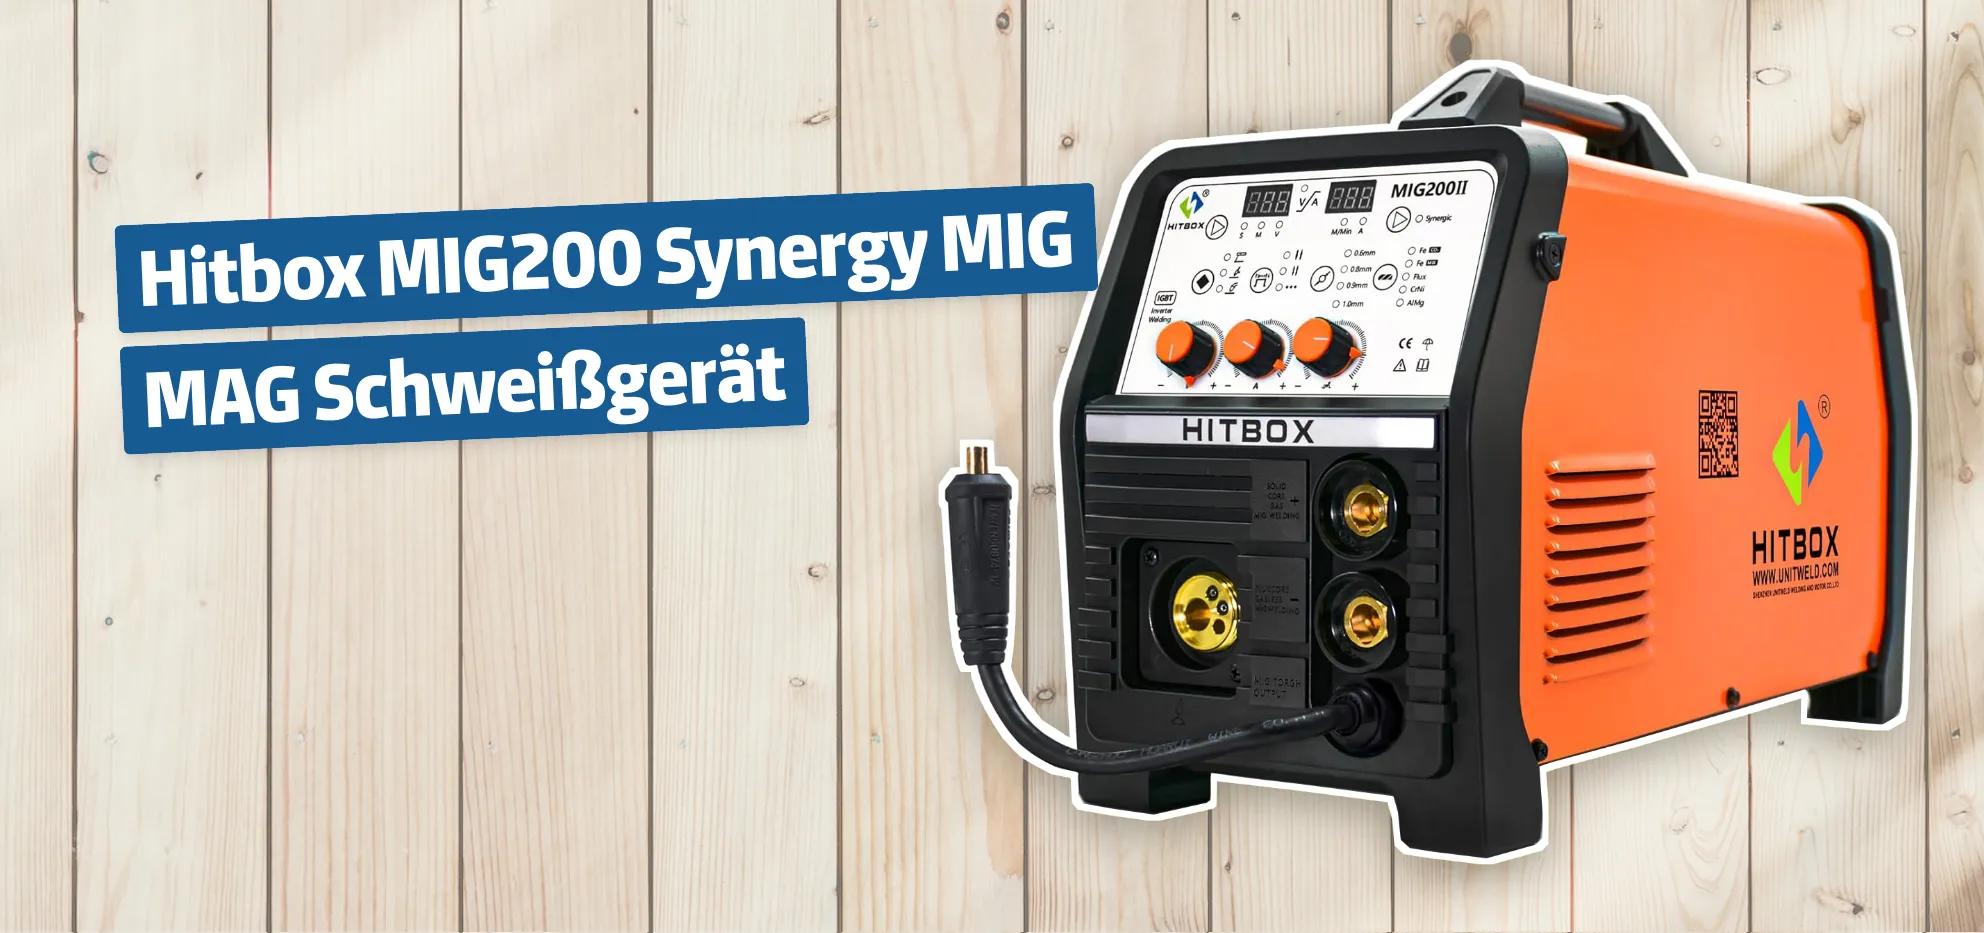 Hitbox MIG200 Synergy MIG MAG Schweißgerät